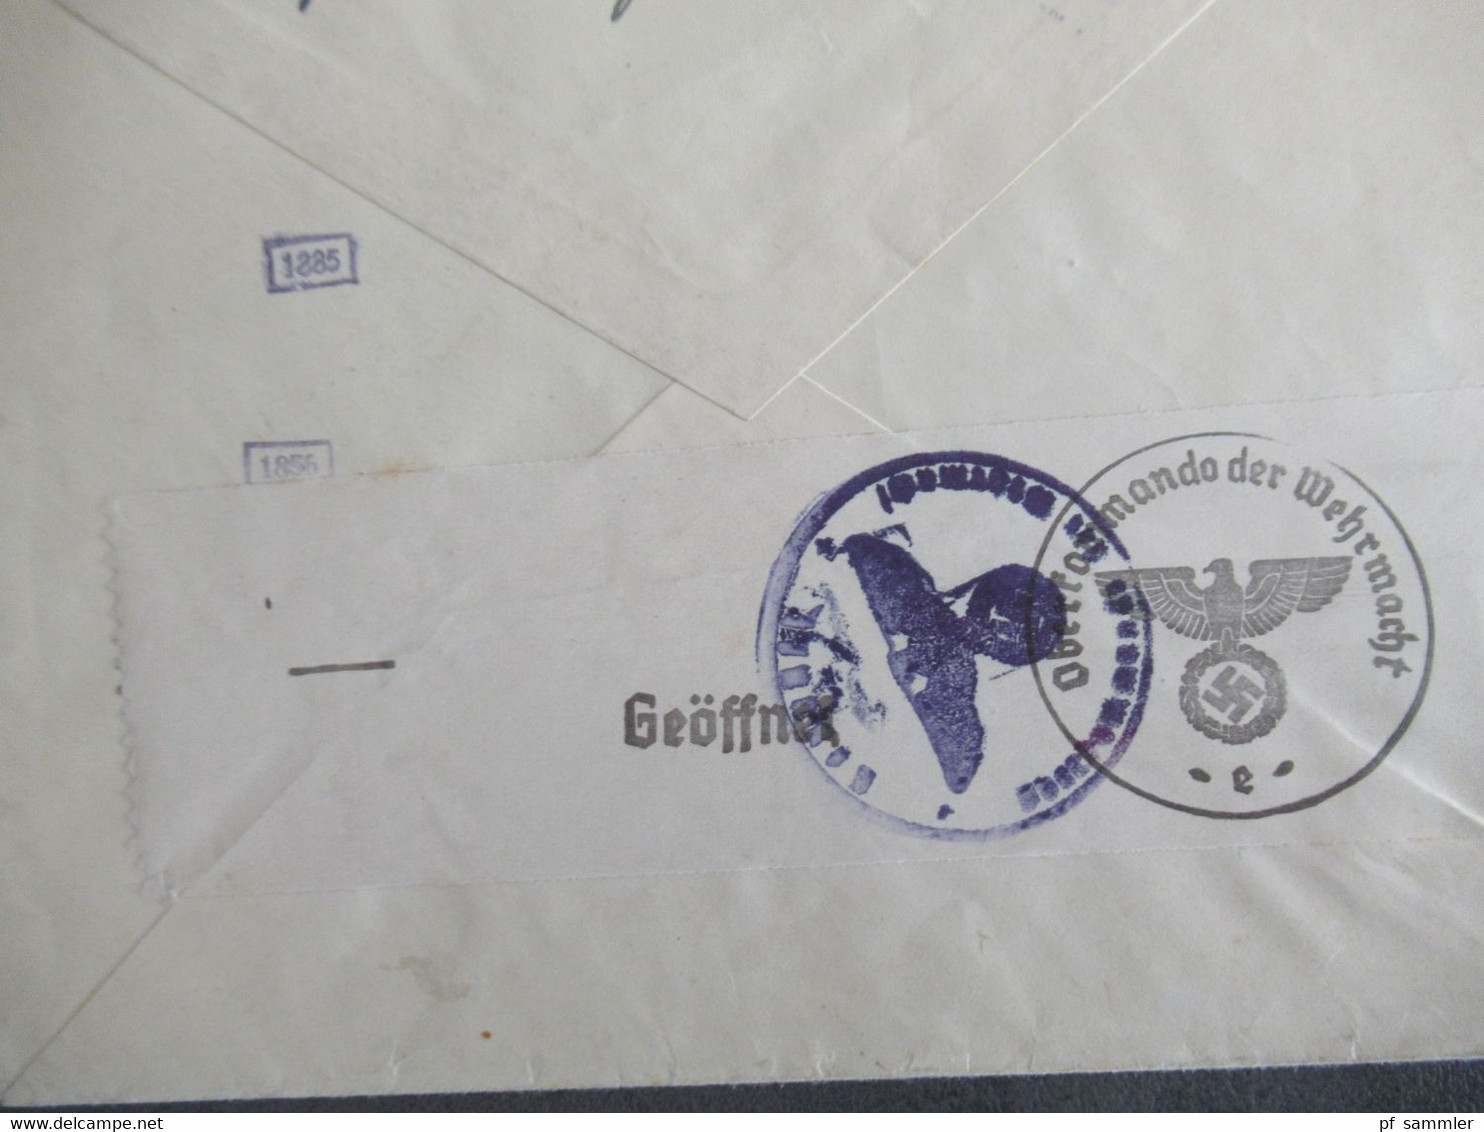 Böhmen Und Mähren Nr.32 EF Auslandsbrief Luzern Schweiz Mit OKW Zensur / Mehrfachzensur Zensurstempel / Zensurstreifen - Storia Postale